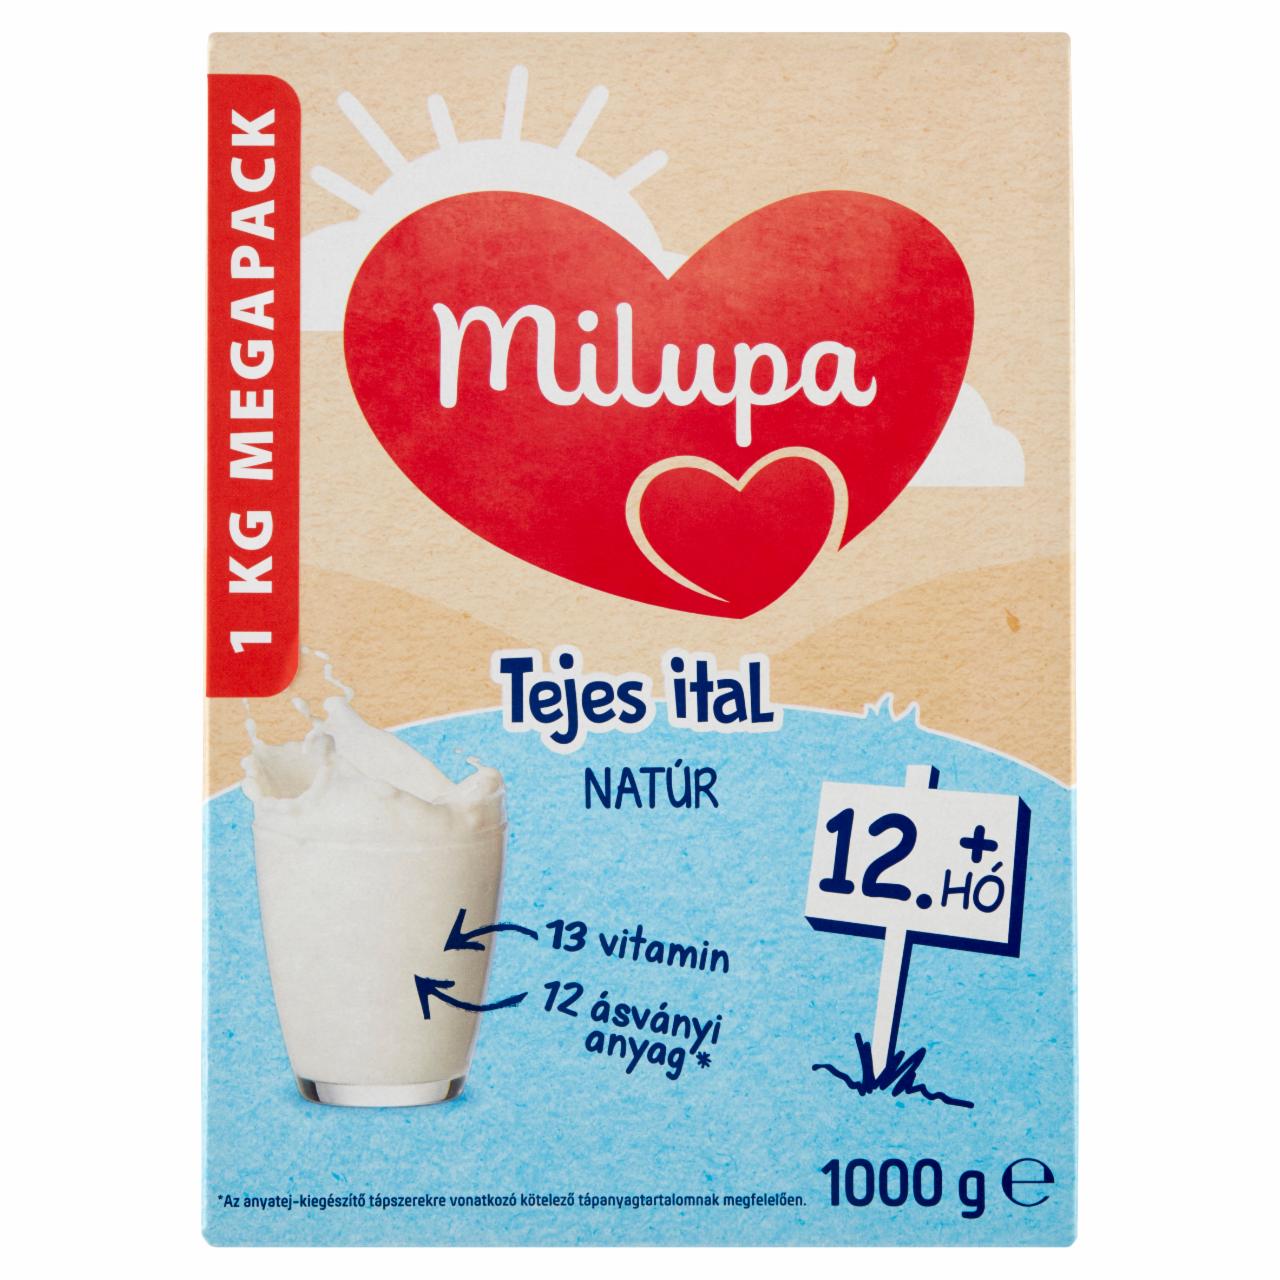 Képek - Milupa natúr tejes ital tejalapú anyatej-kiegészítő tápszer 12. hó+ 2 x 500 g (1000 g)